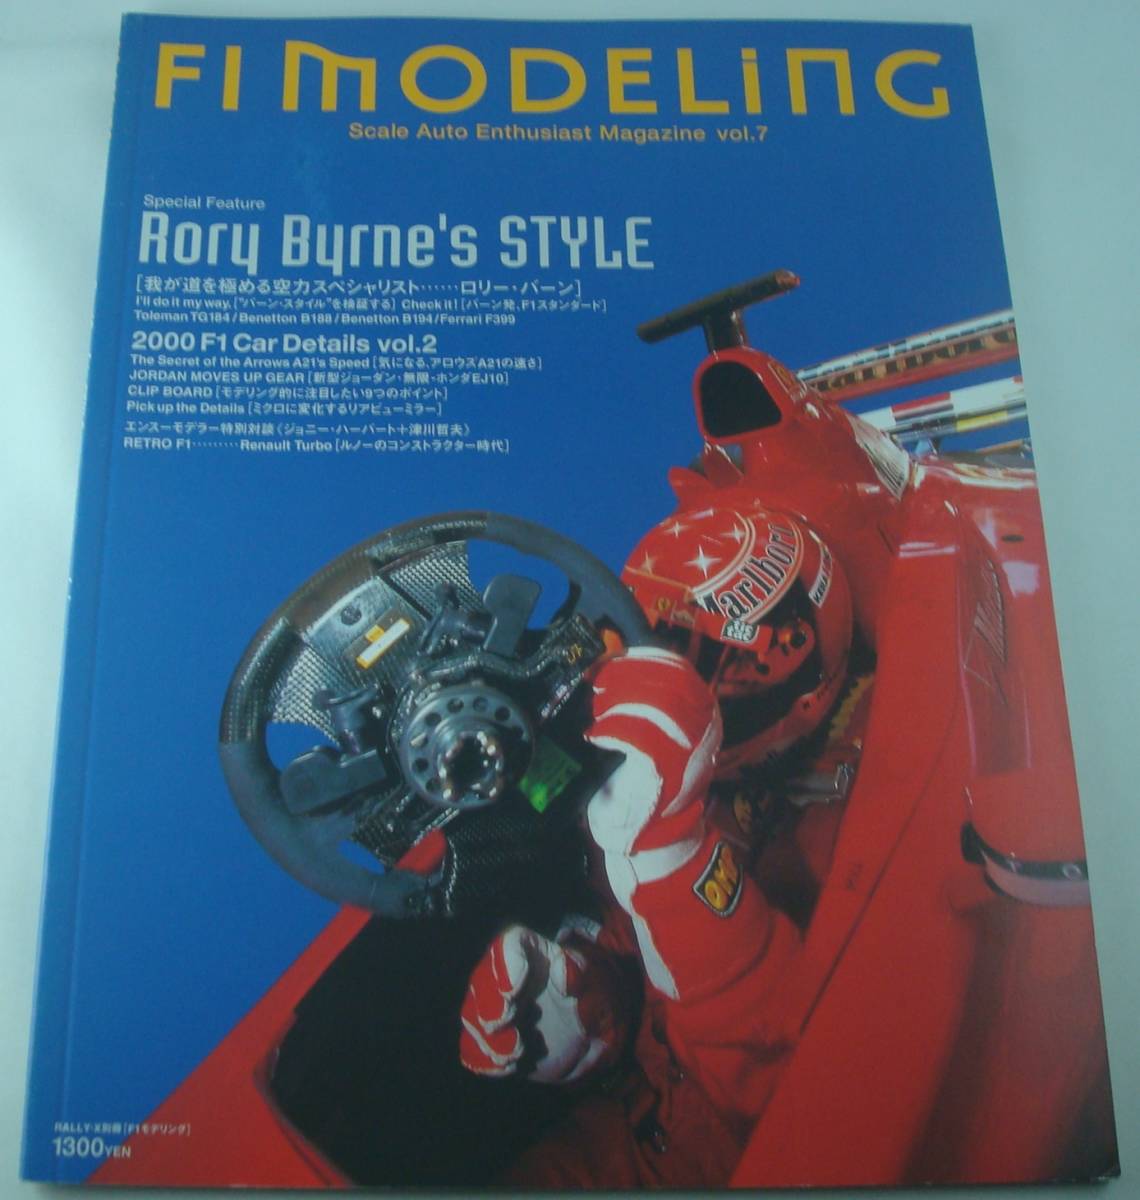 登場大人気アイテム 柔らかい F1モデリング Vol.19 F1 MODELING ロリー バーン 大型本 rajpstraga.pl rajpstraga.pl